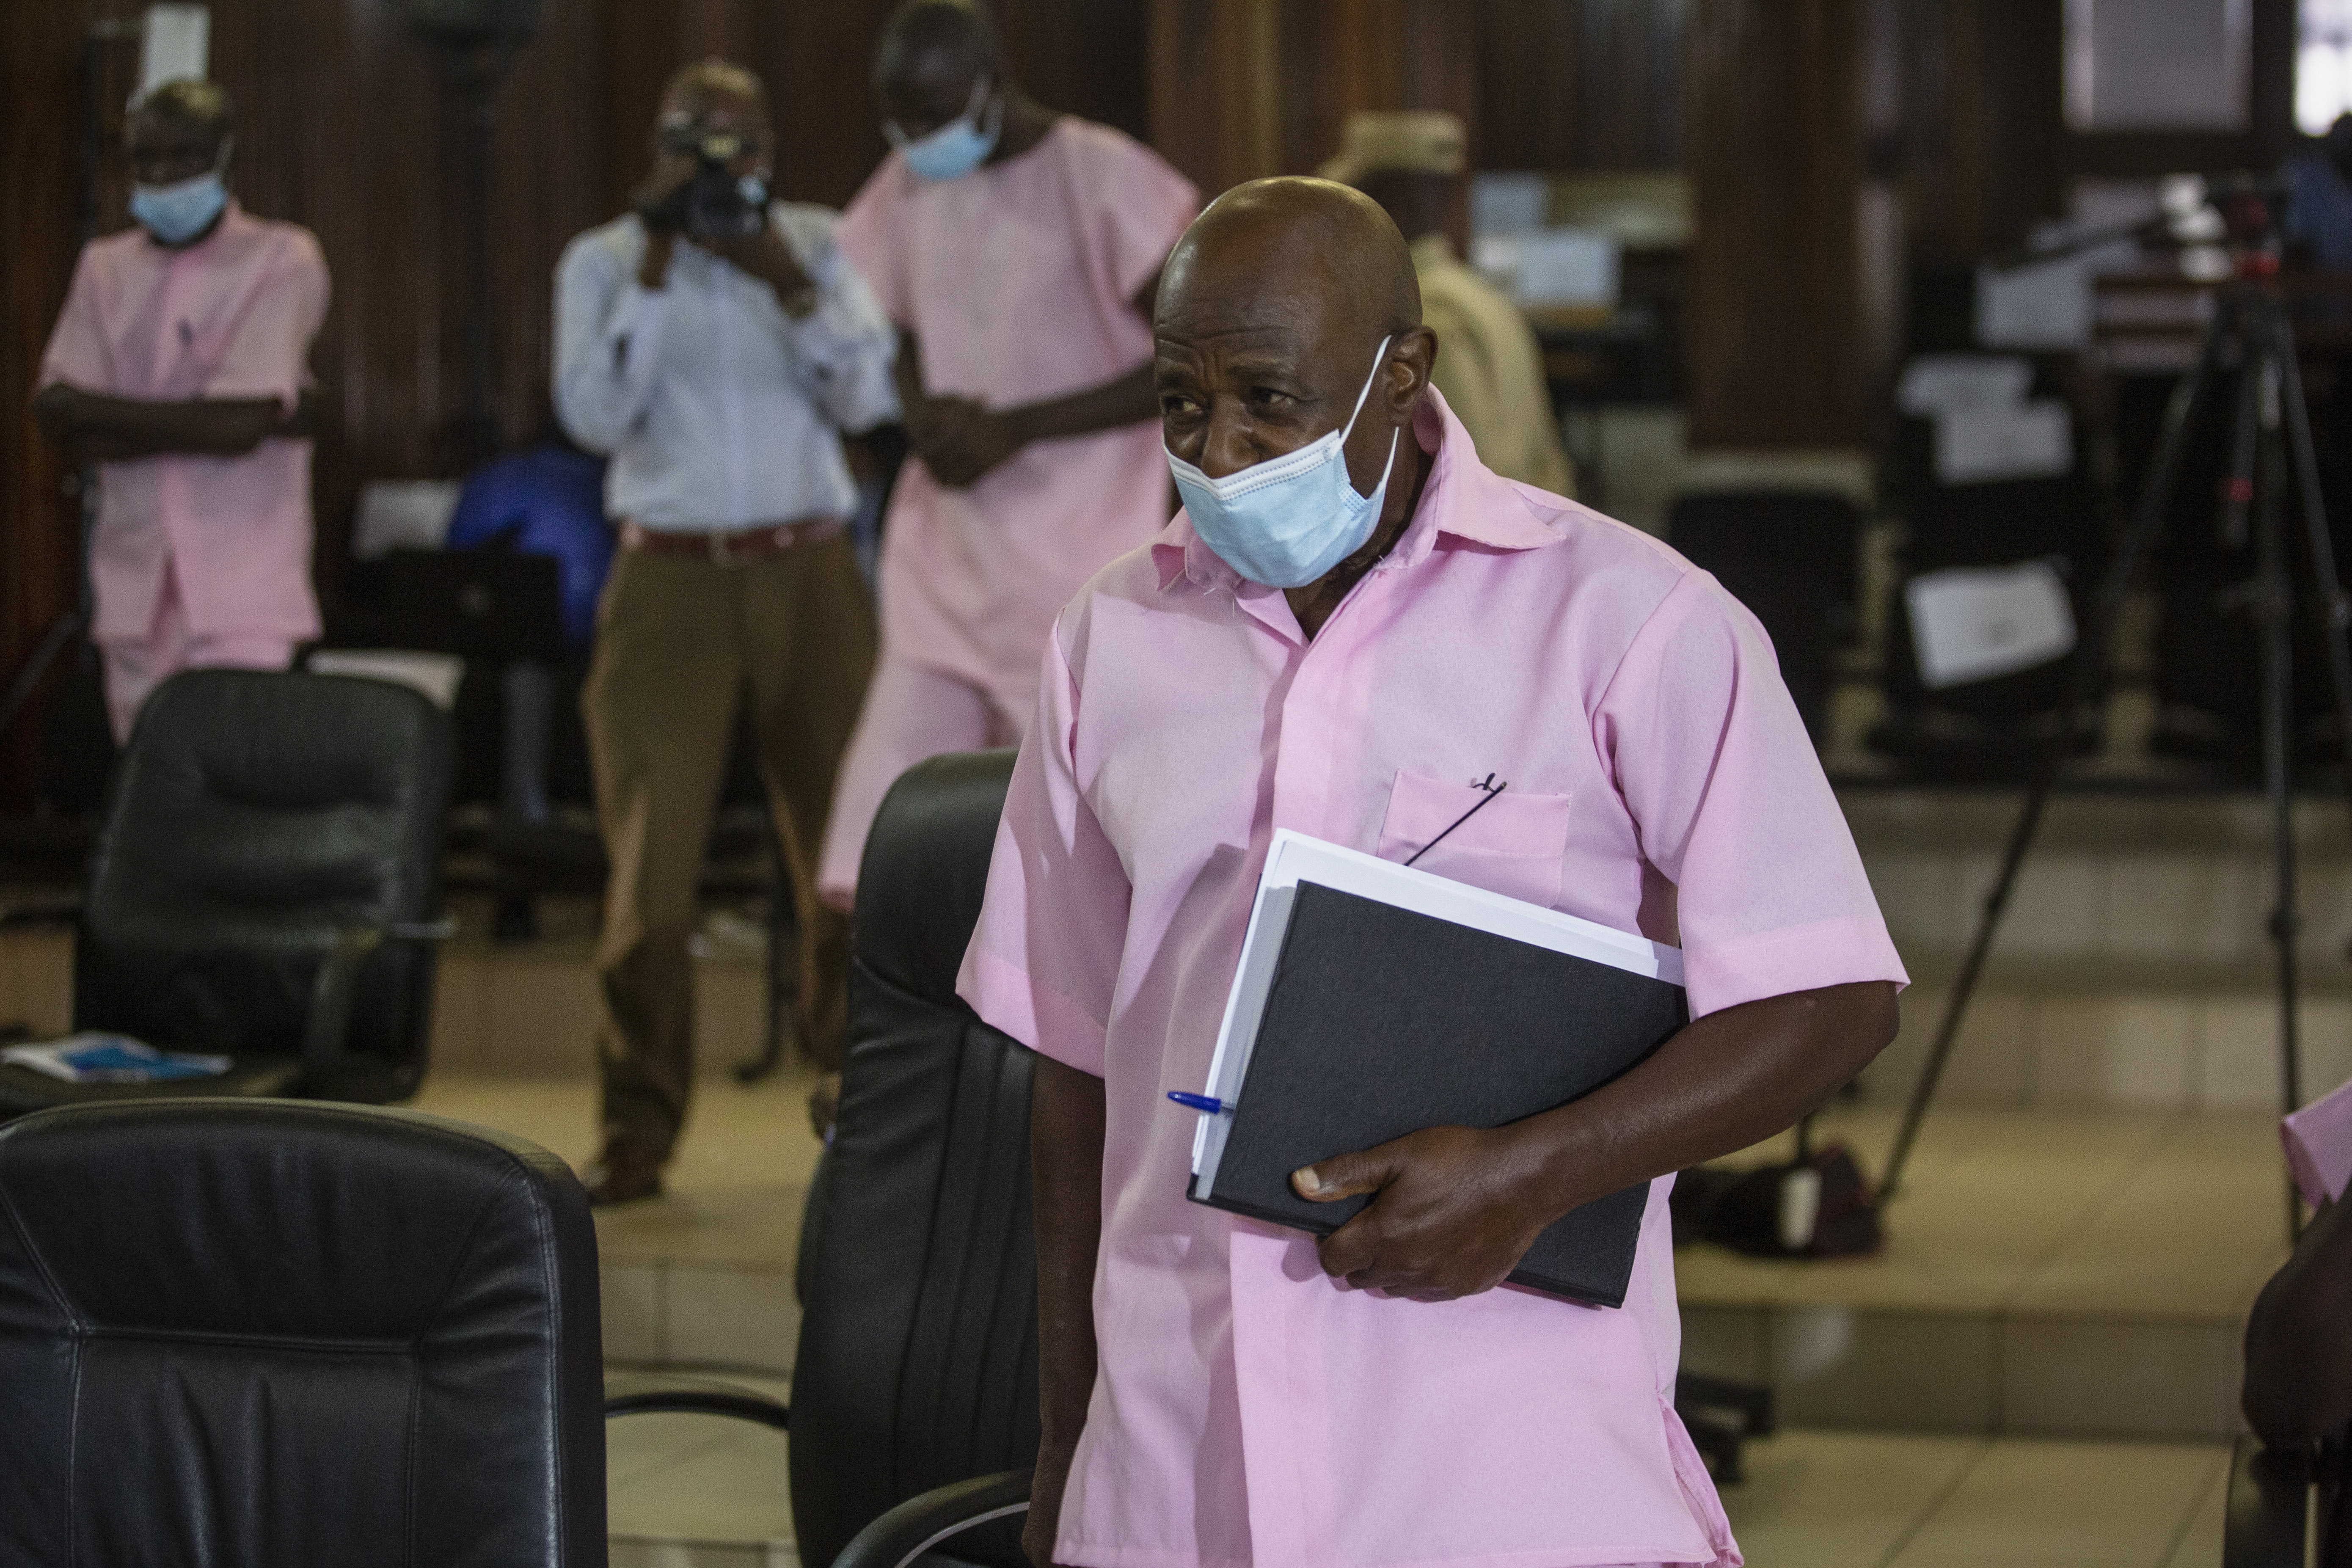 Paul Rusesabagina, quien inspiró la película "Hotel Ruanda" y se le atribuye haber salvado a más de 1.000 personas al albergarlas en el hotel que administraba durante el genocidio, asiste a una audiencia judicial en Kigali, Ruanda, el viernes 26 de febrero de 2021.  